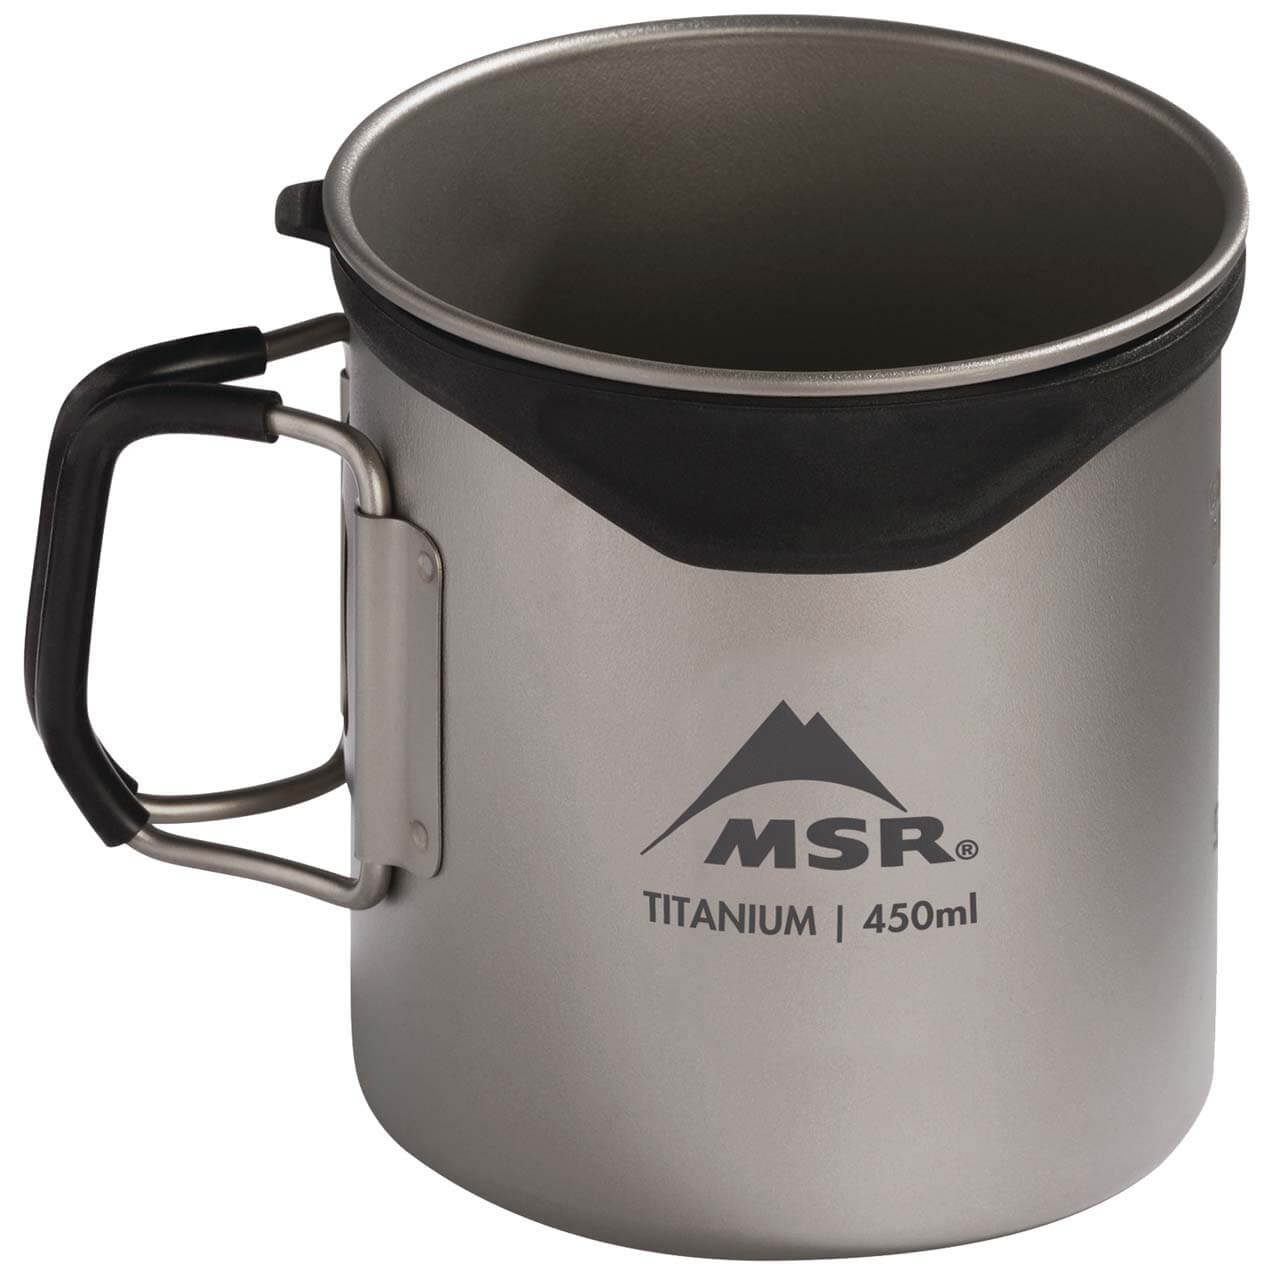 MSR Titan Cup Pot